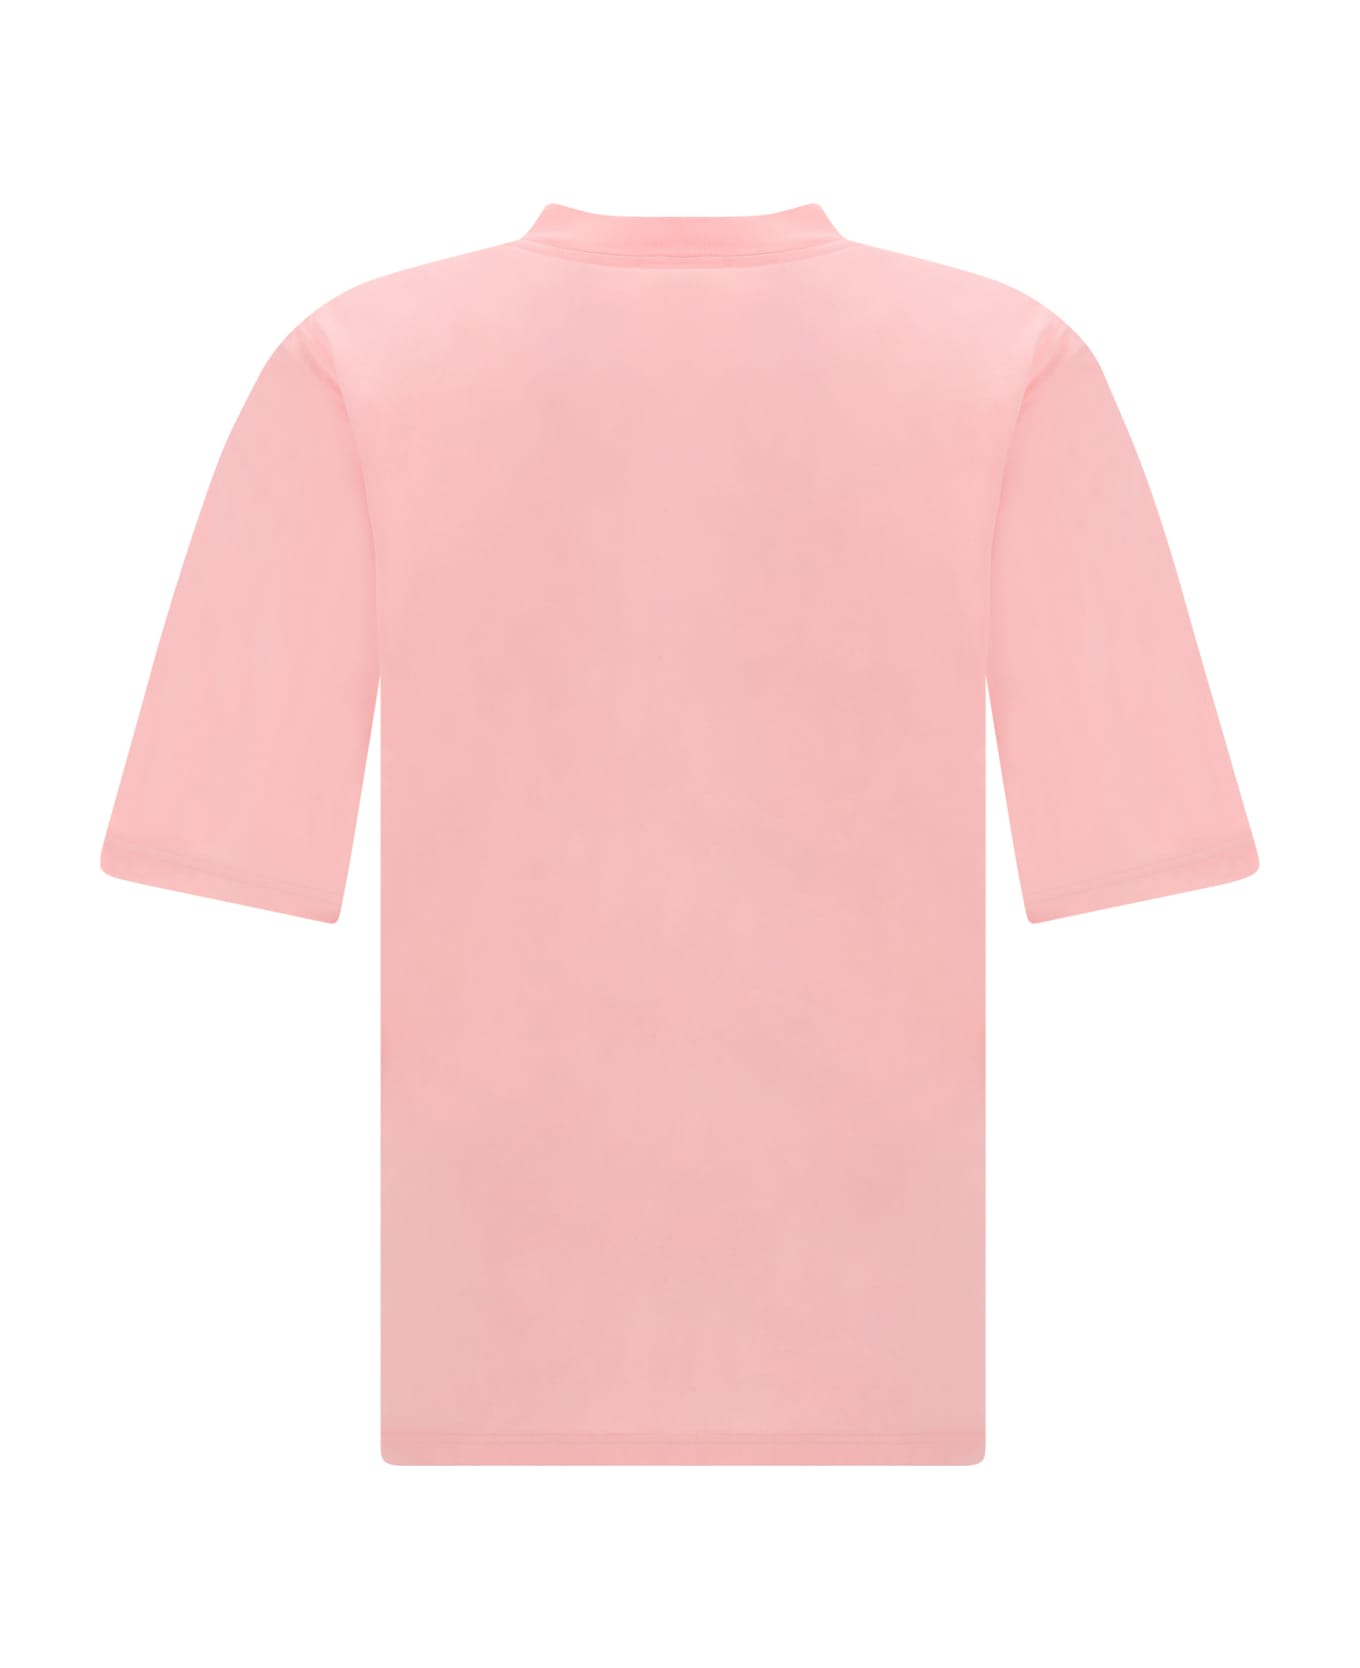 Marni T-shirt - Pink シャツ